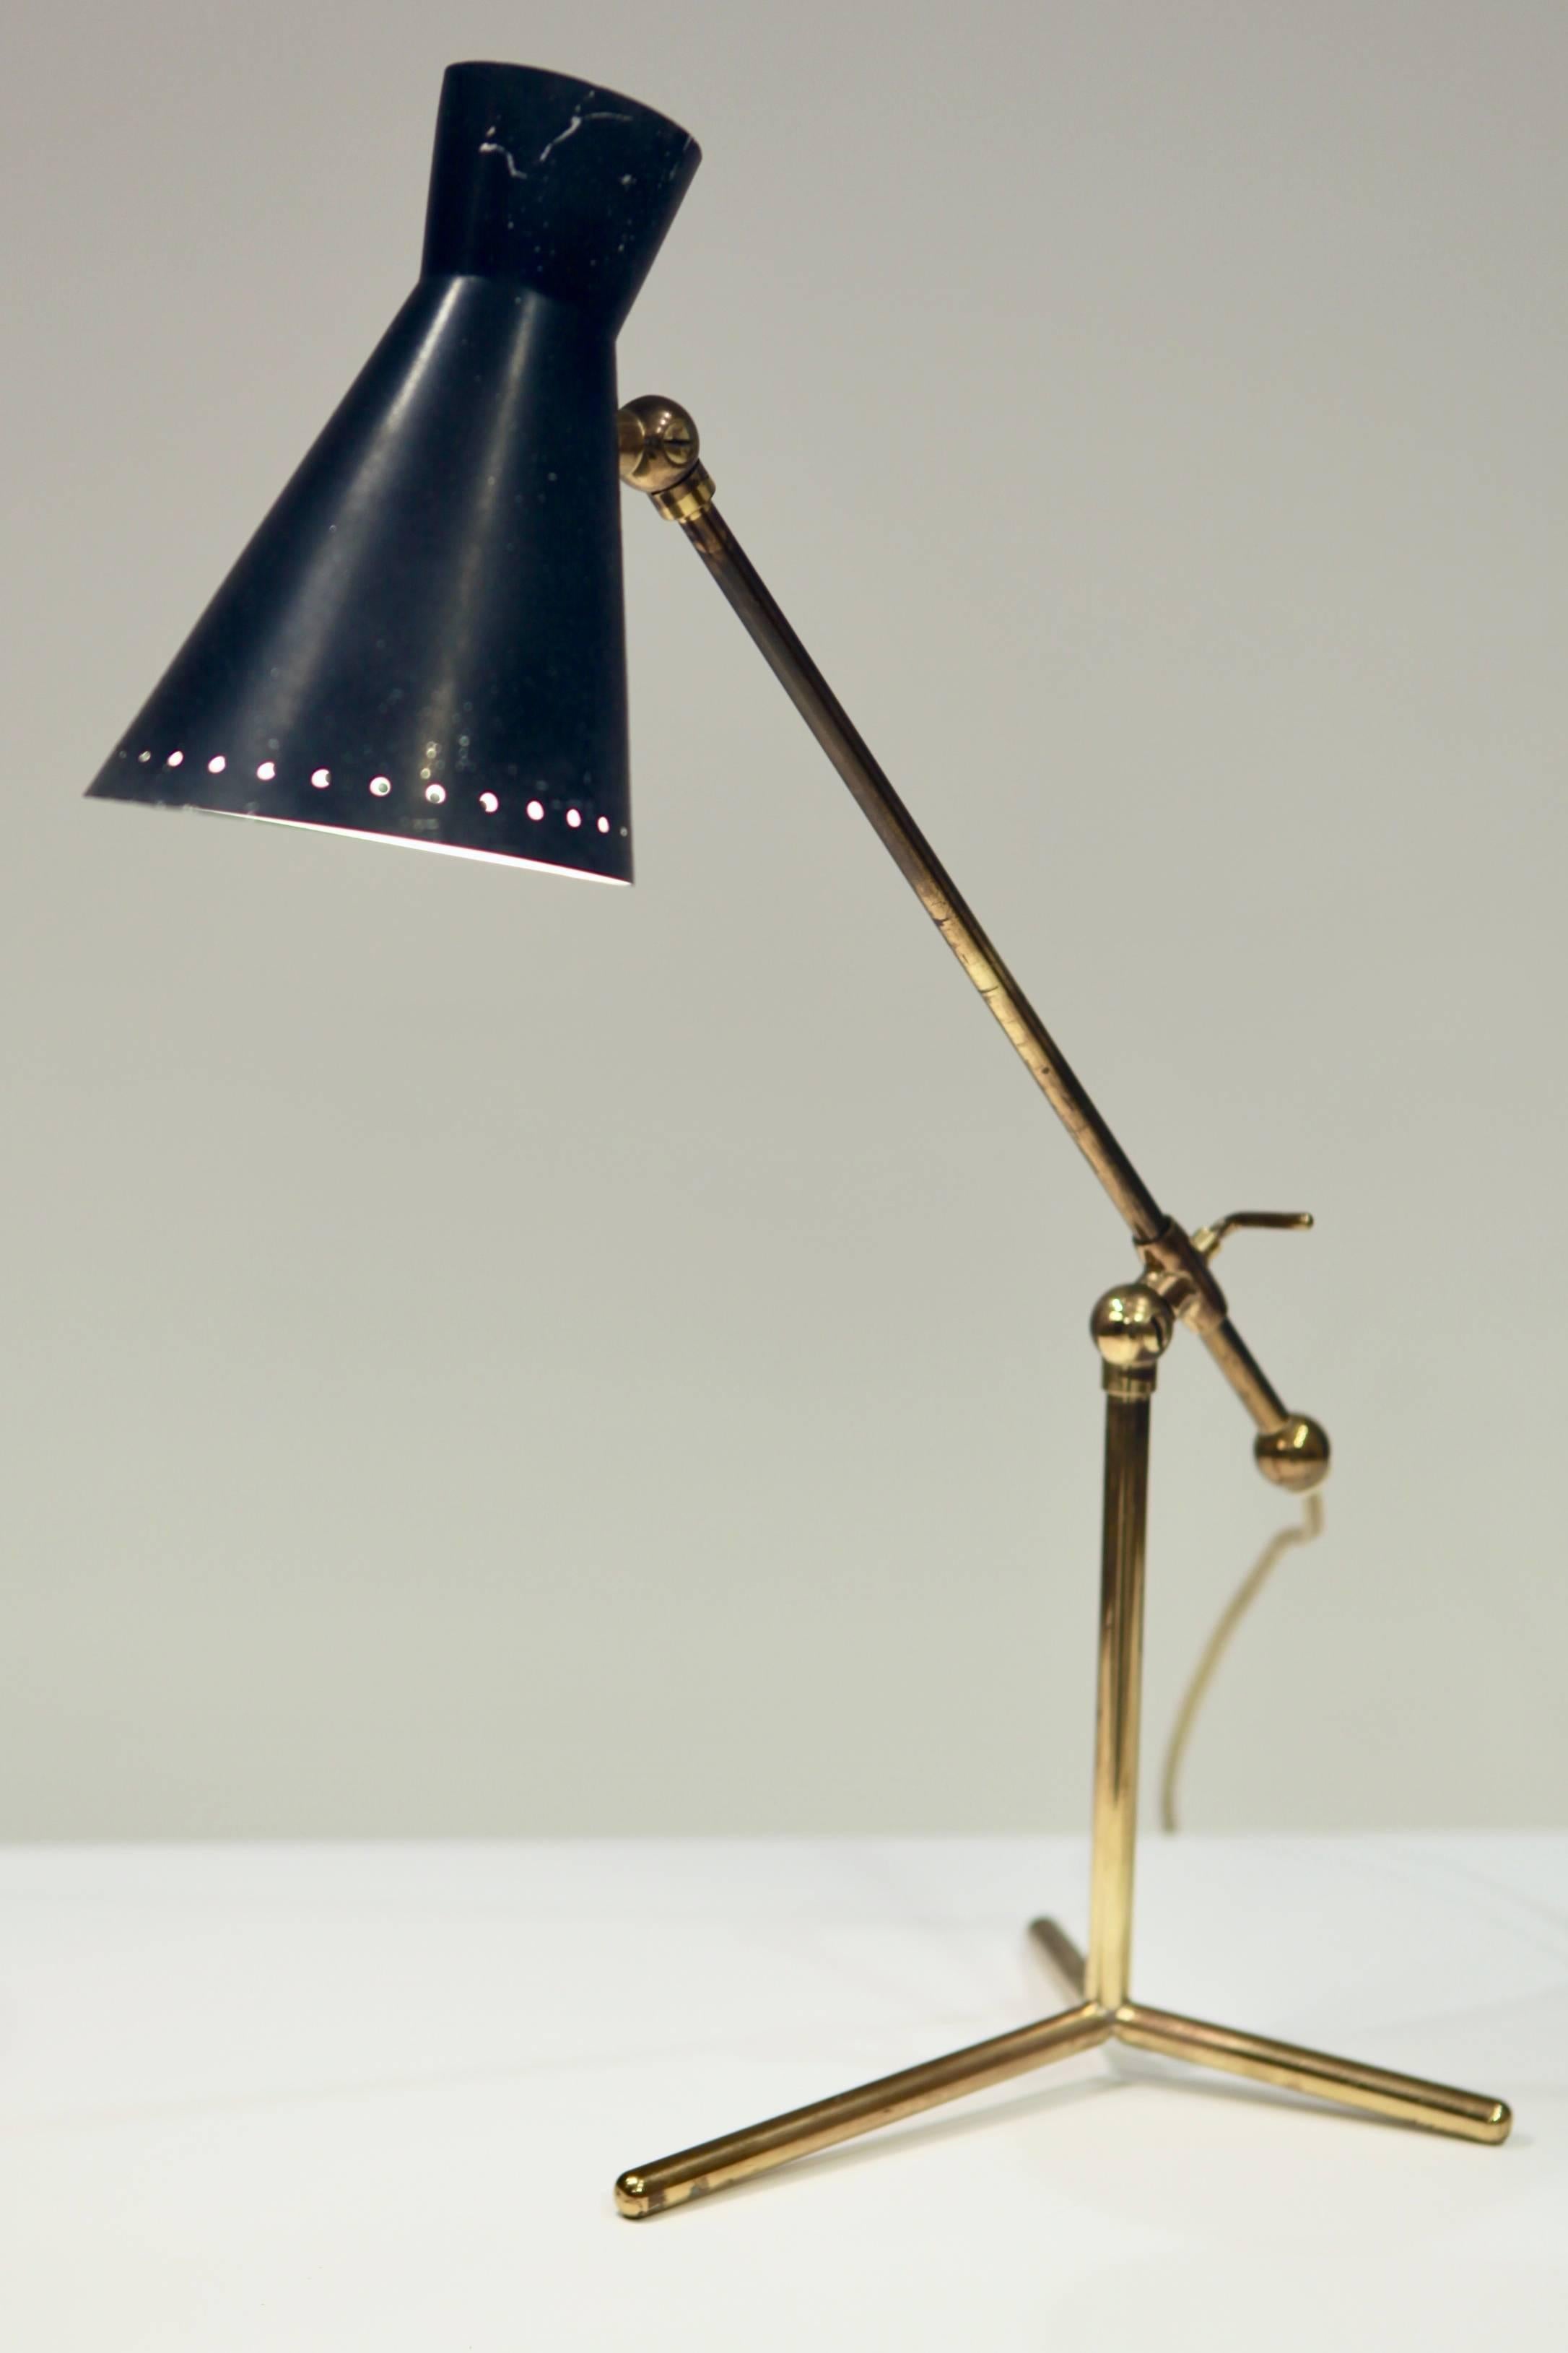 Schreibtischlampe oder Tischlampe von Stilnovo, Italien 1950er Jahre
Messing und schwarz lackiertes Metall, höhenverstellbar, 
neu verkabelt